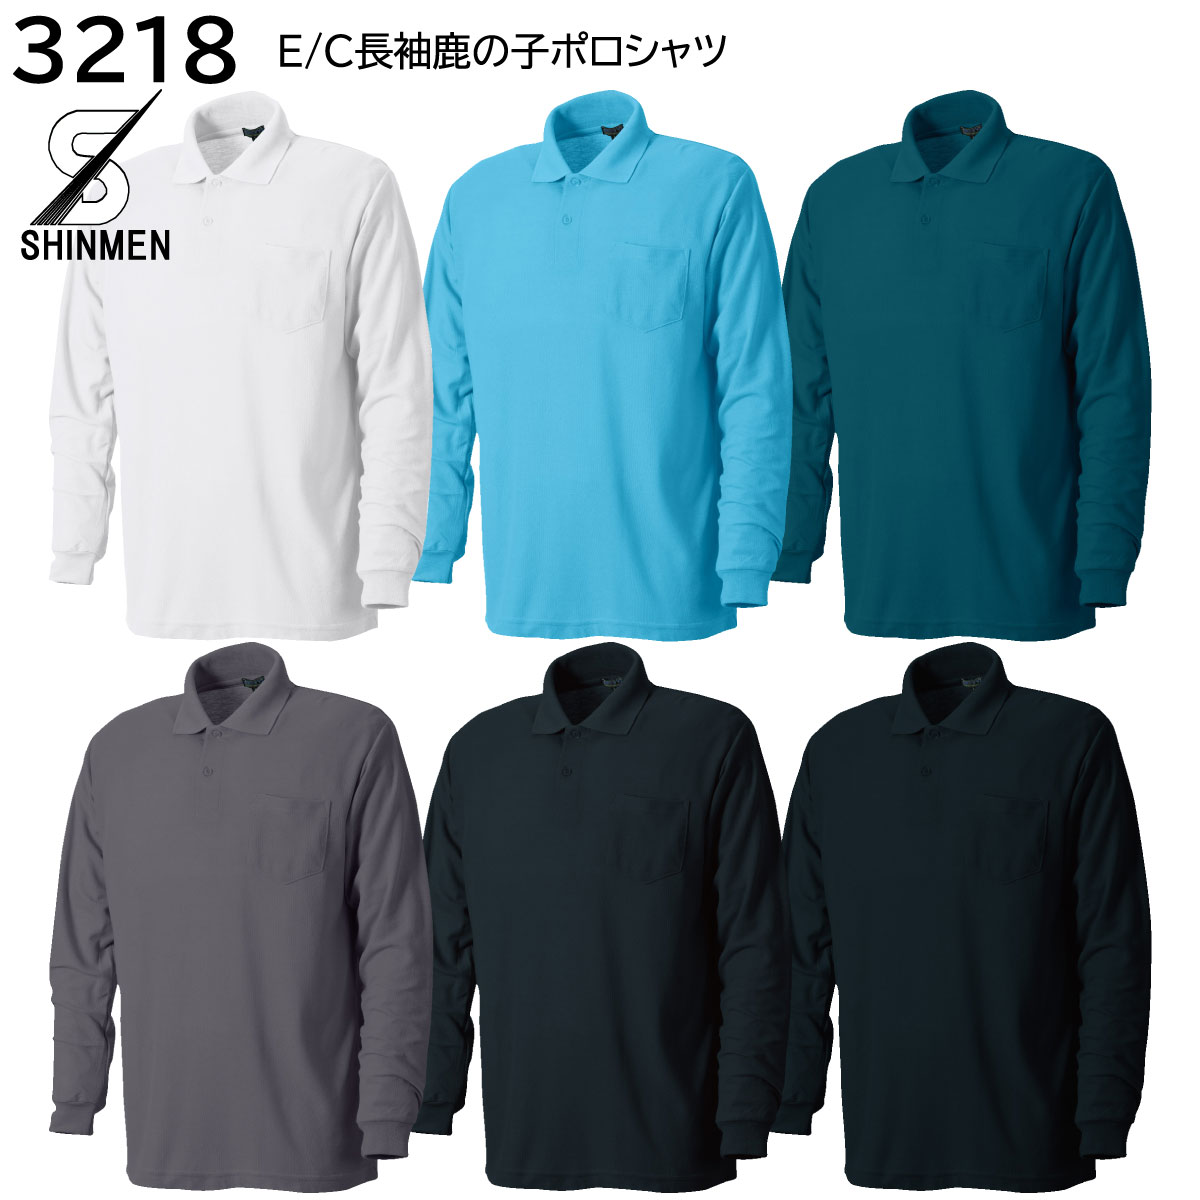 T/C長袖鹿の子ポロシャツ 3218 M〜3L シンメン 6色展開